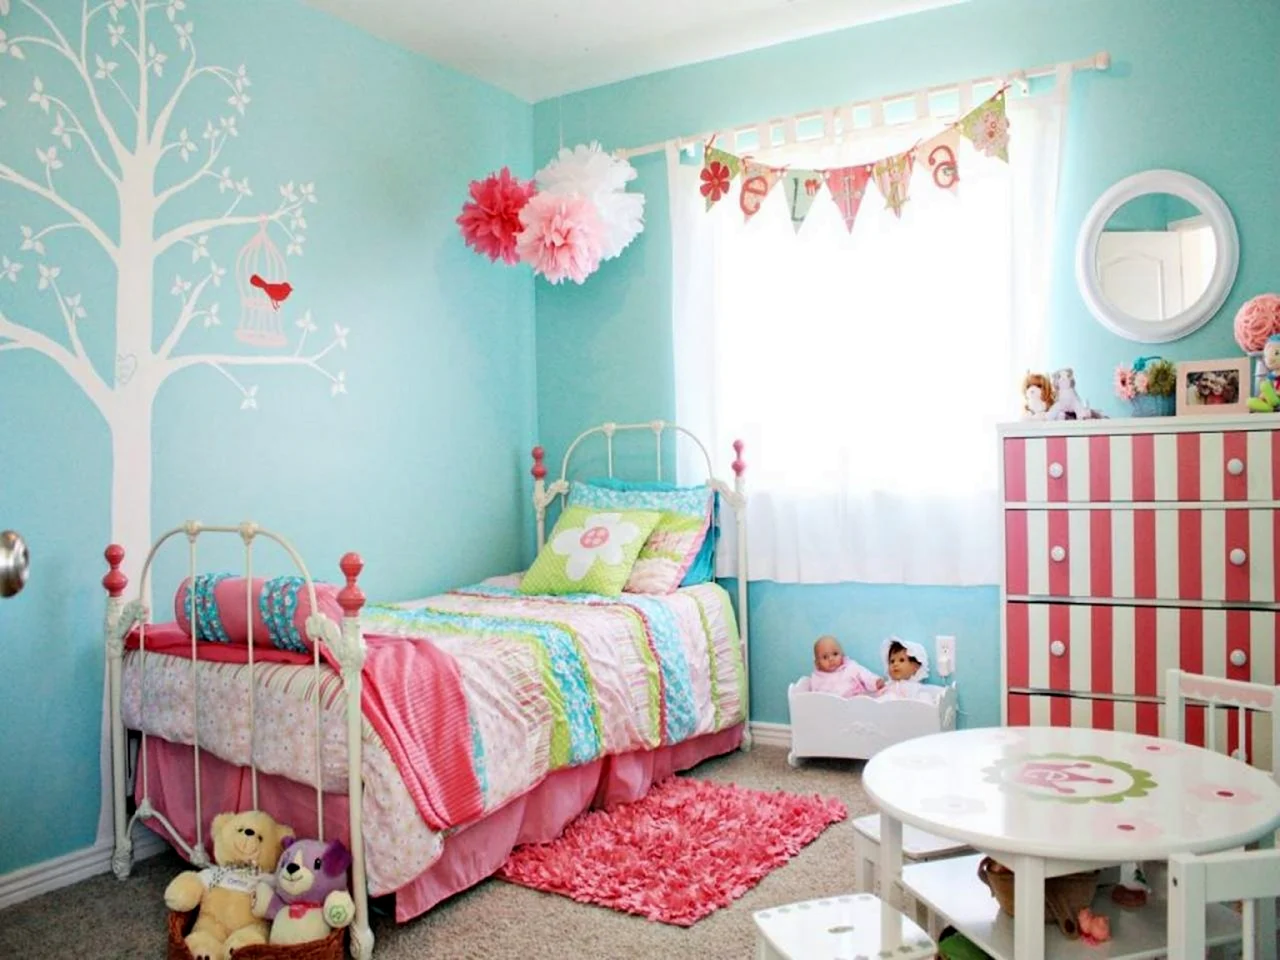 Розово голубая детская комната